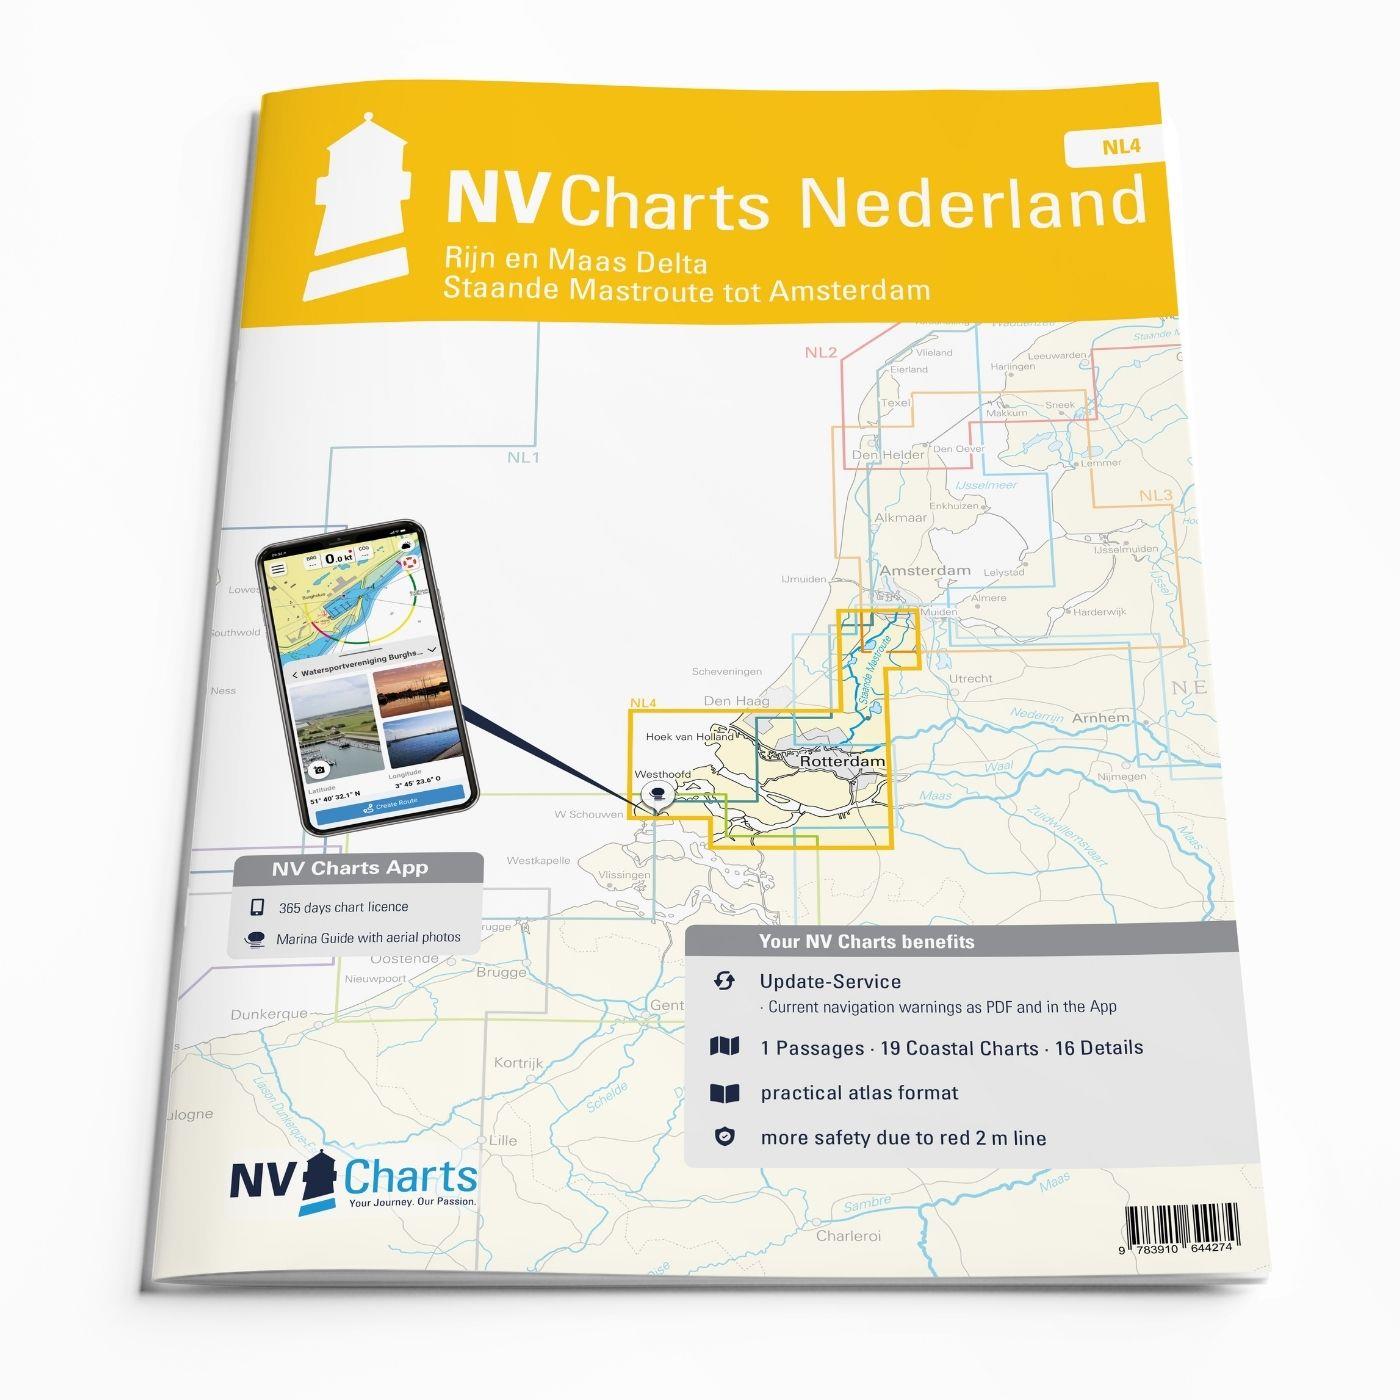 NV Charts Nederland NL4 - Rijn en Maas Delta